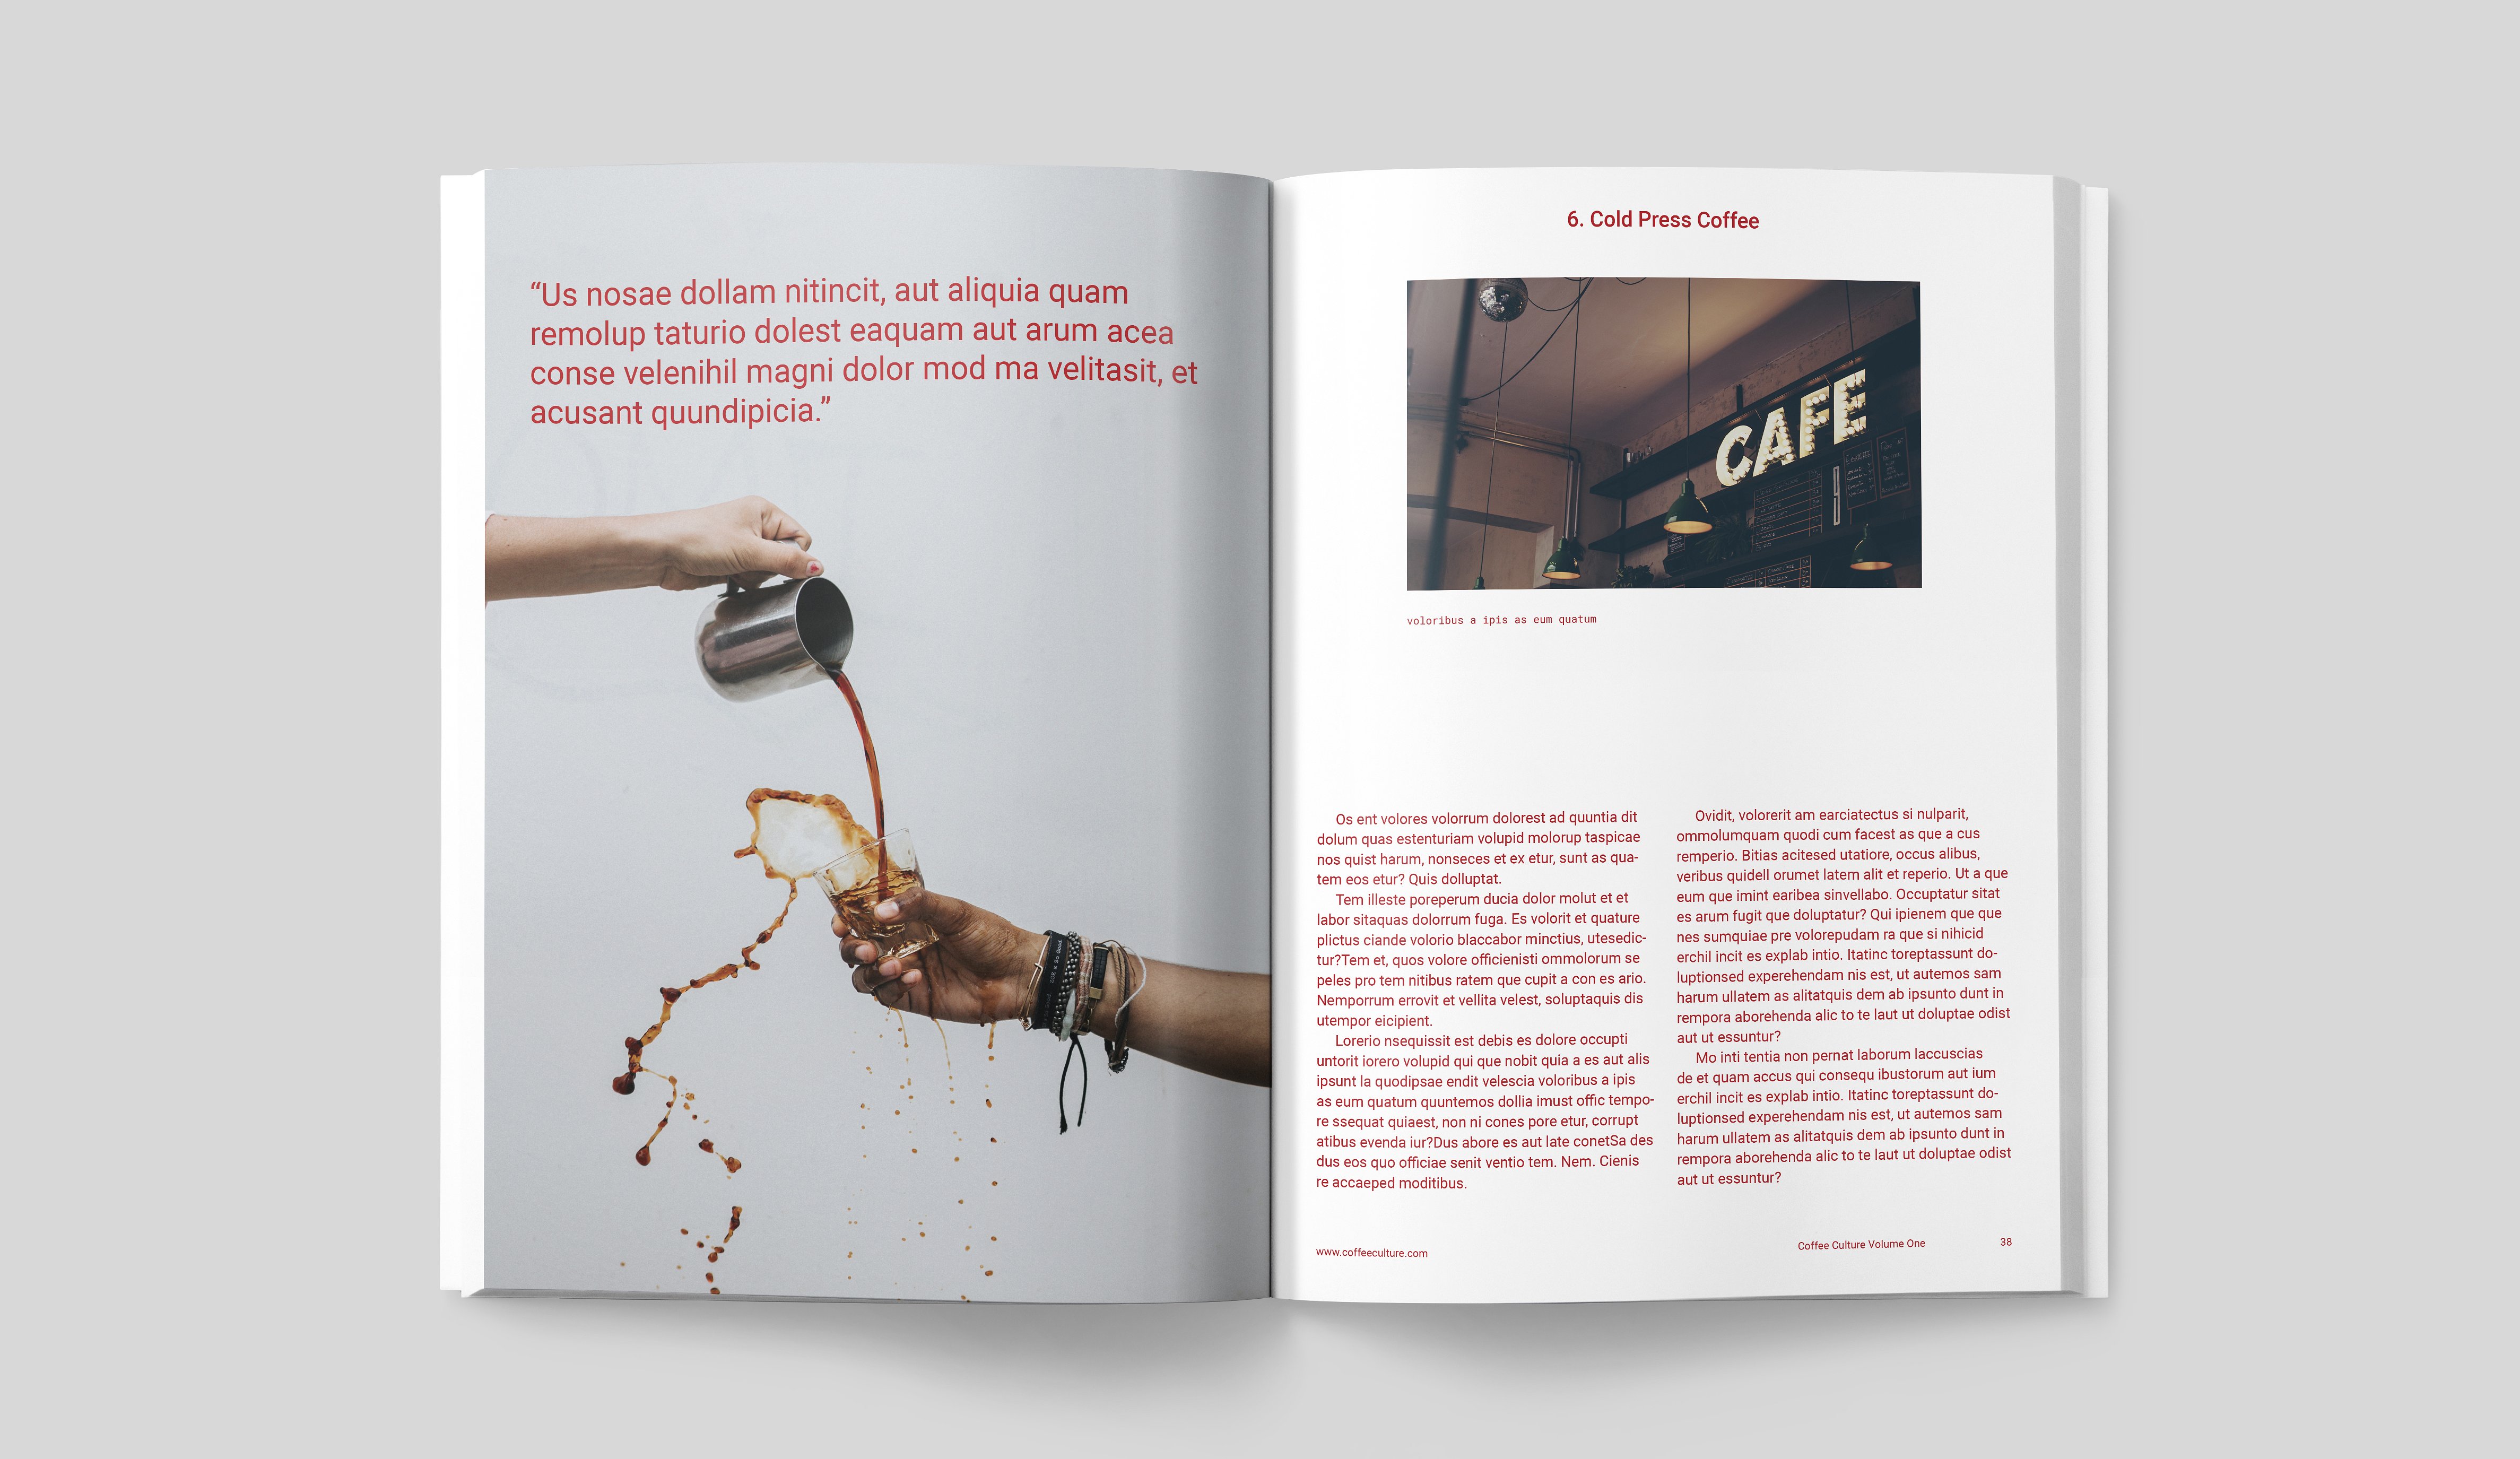 咖啡文化画册 COFFEE CULTURE MAGAZINE插图6